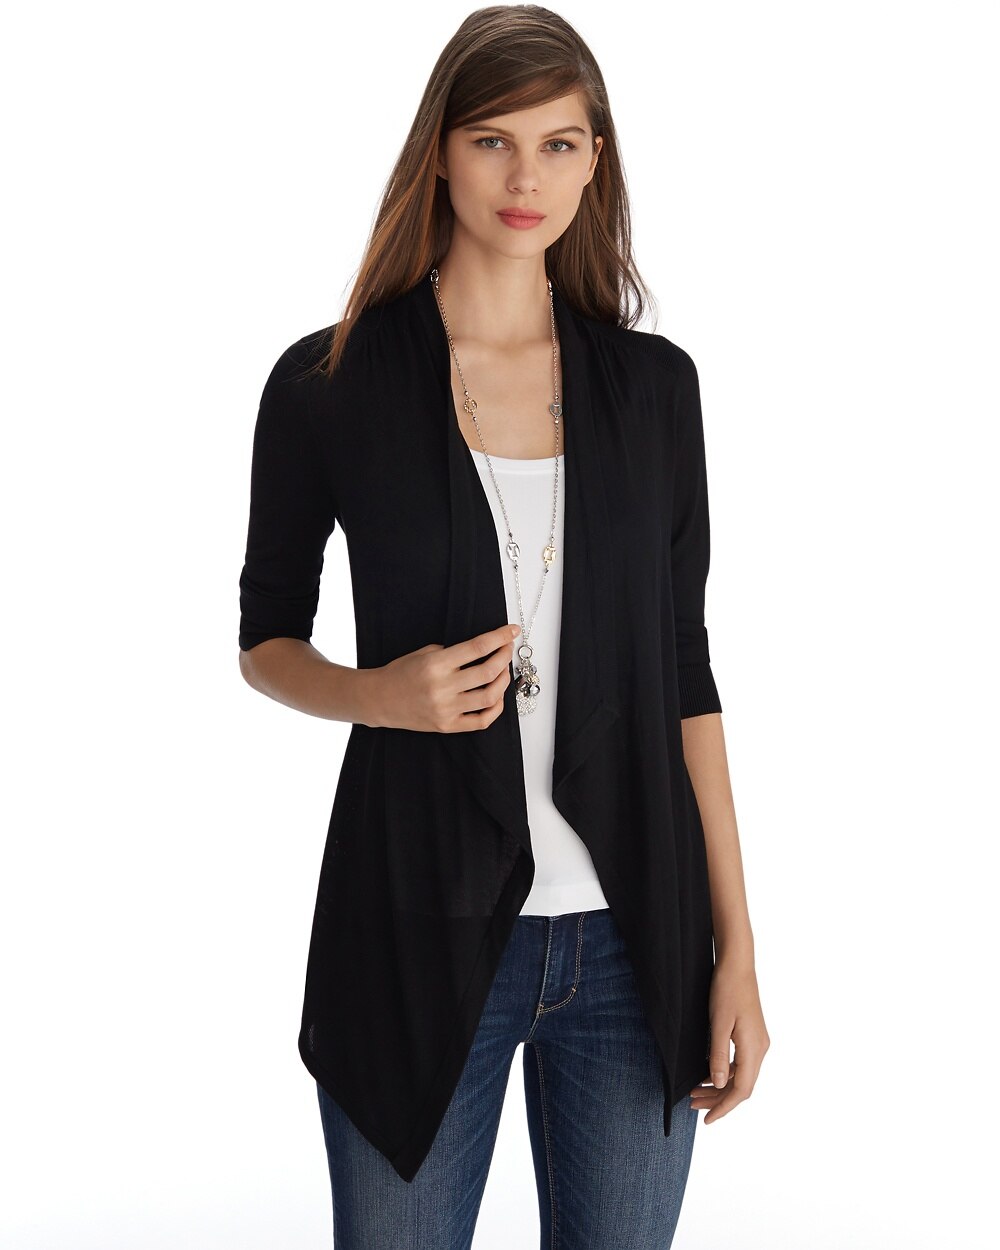 3/4 Sleeve Black Coverup - Shop Tops For Women - White Blouses, Black ...